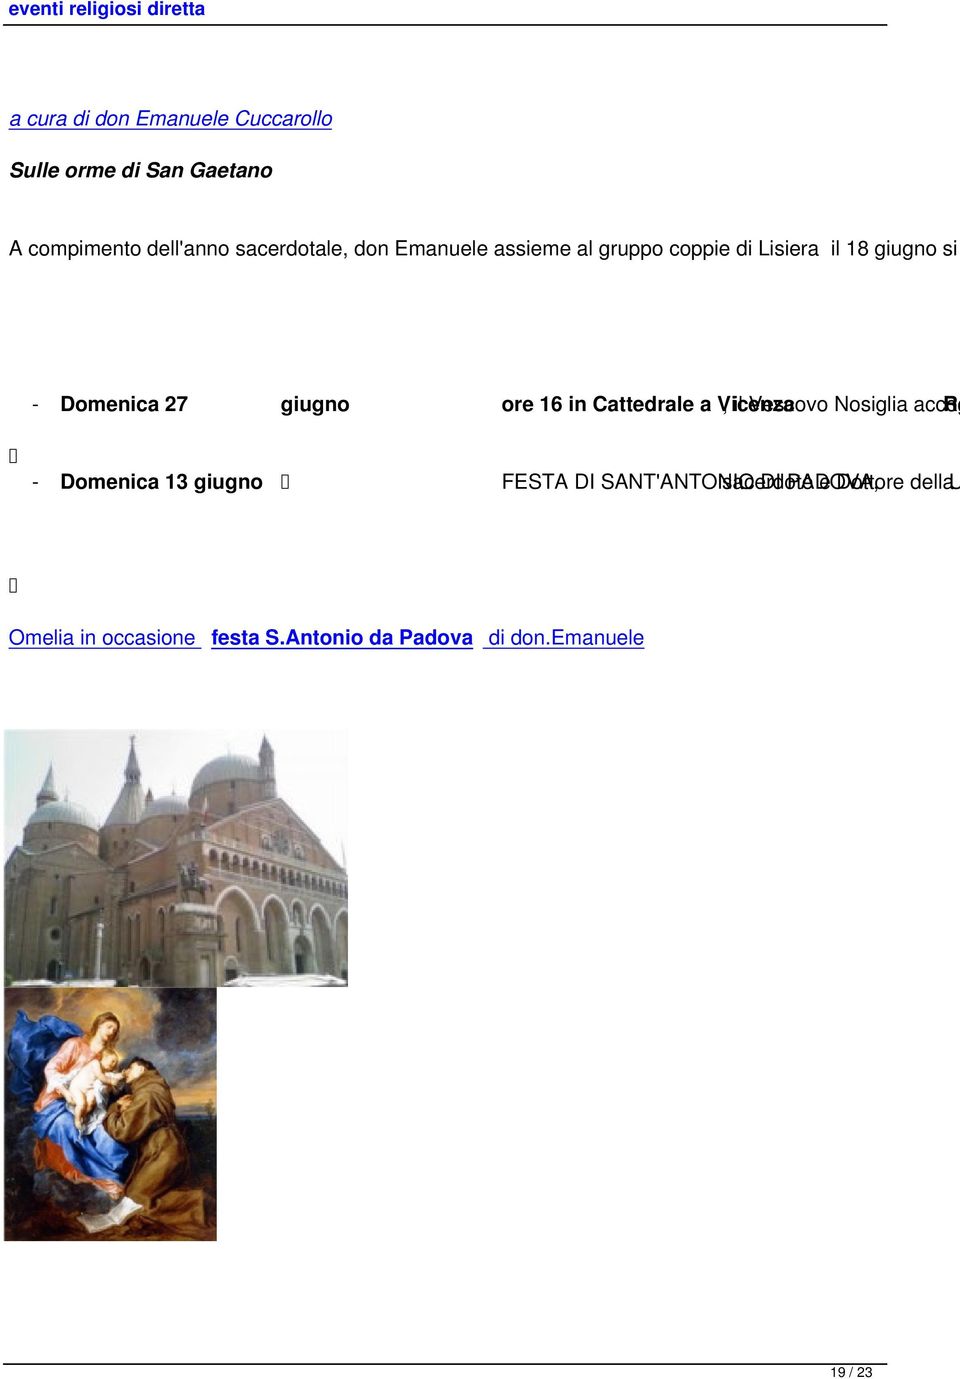 Cattedrale a Vicenza, il Vescovo Nosiglia accog Ra - Domenica 13 giugno FESTA DI SANT'ANTONIO